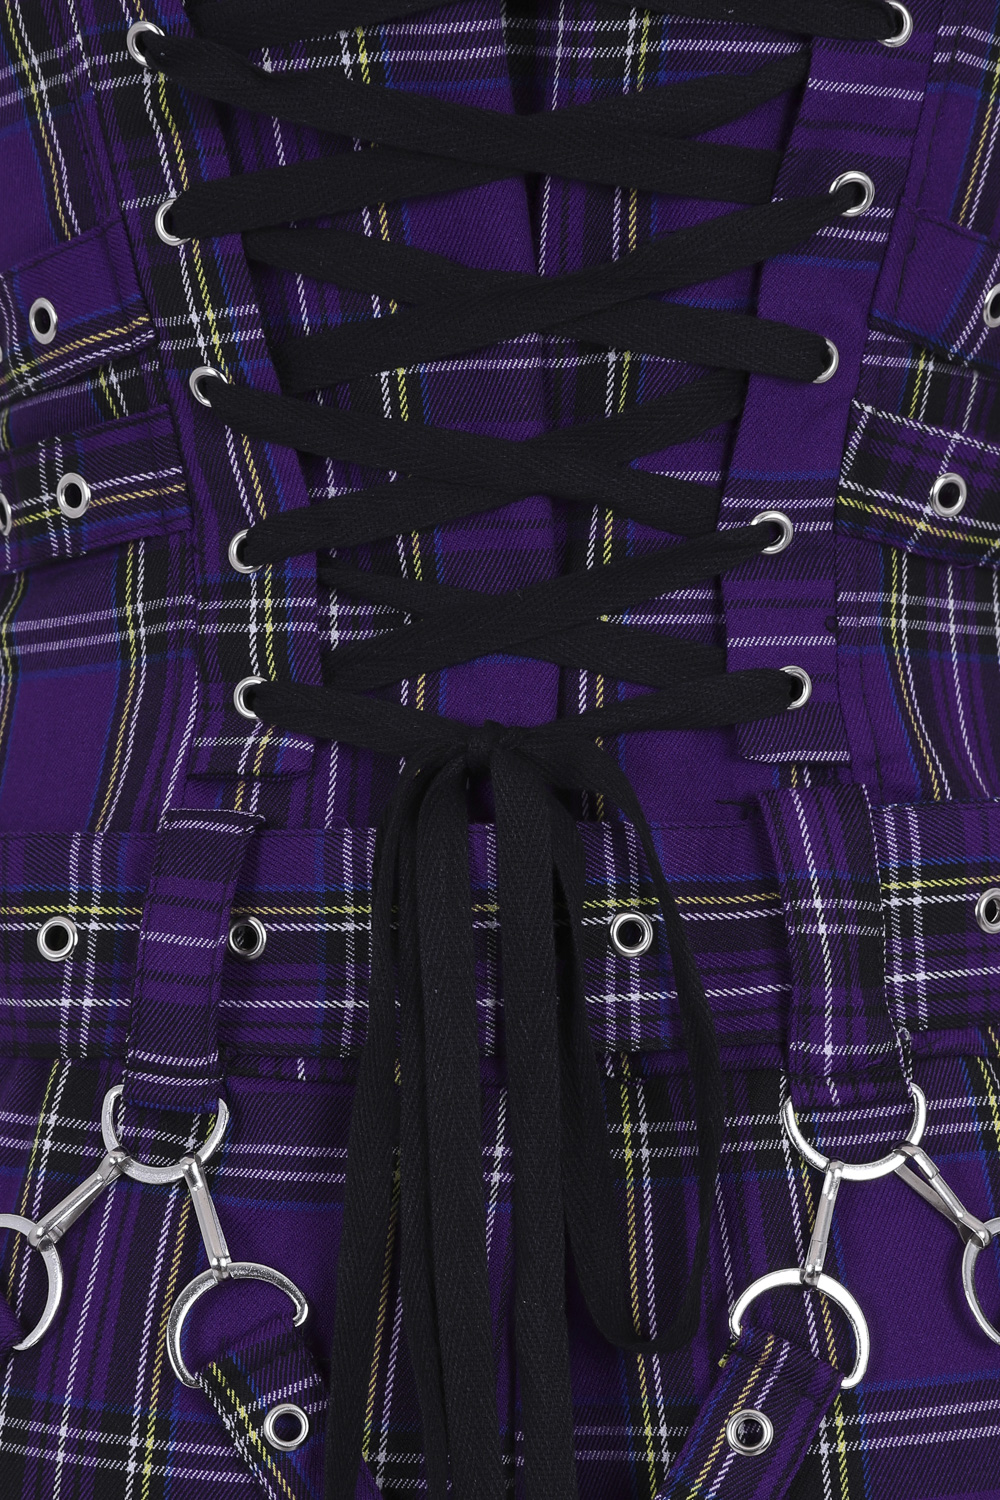 Purple Tartan Emo Punk Dress